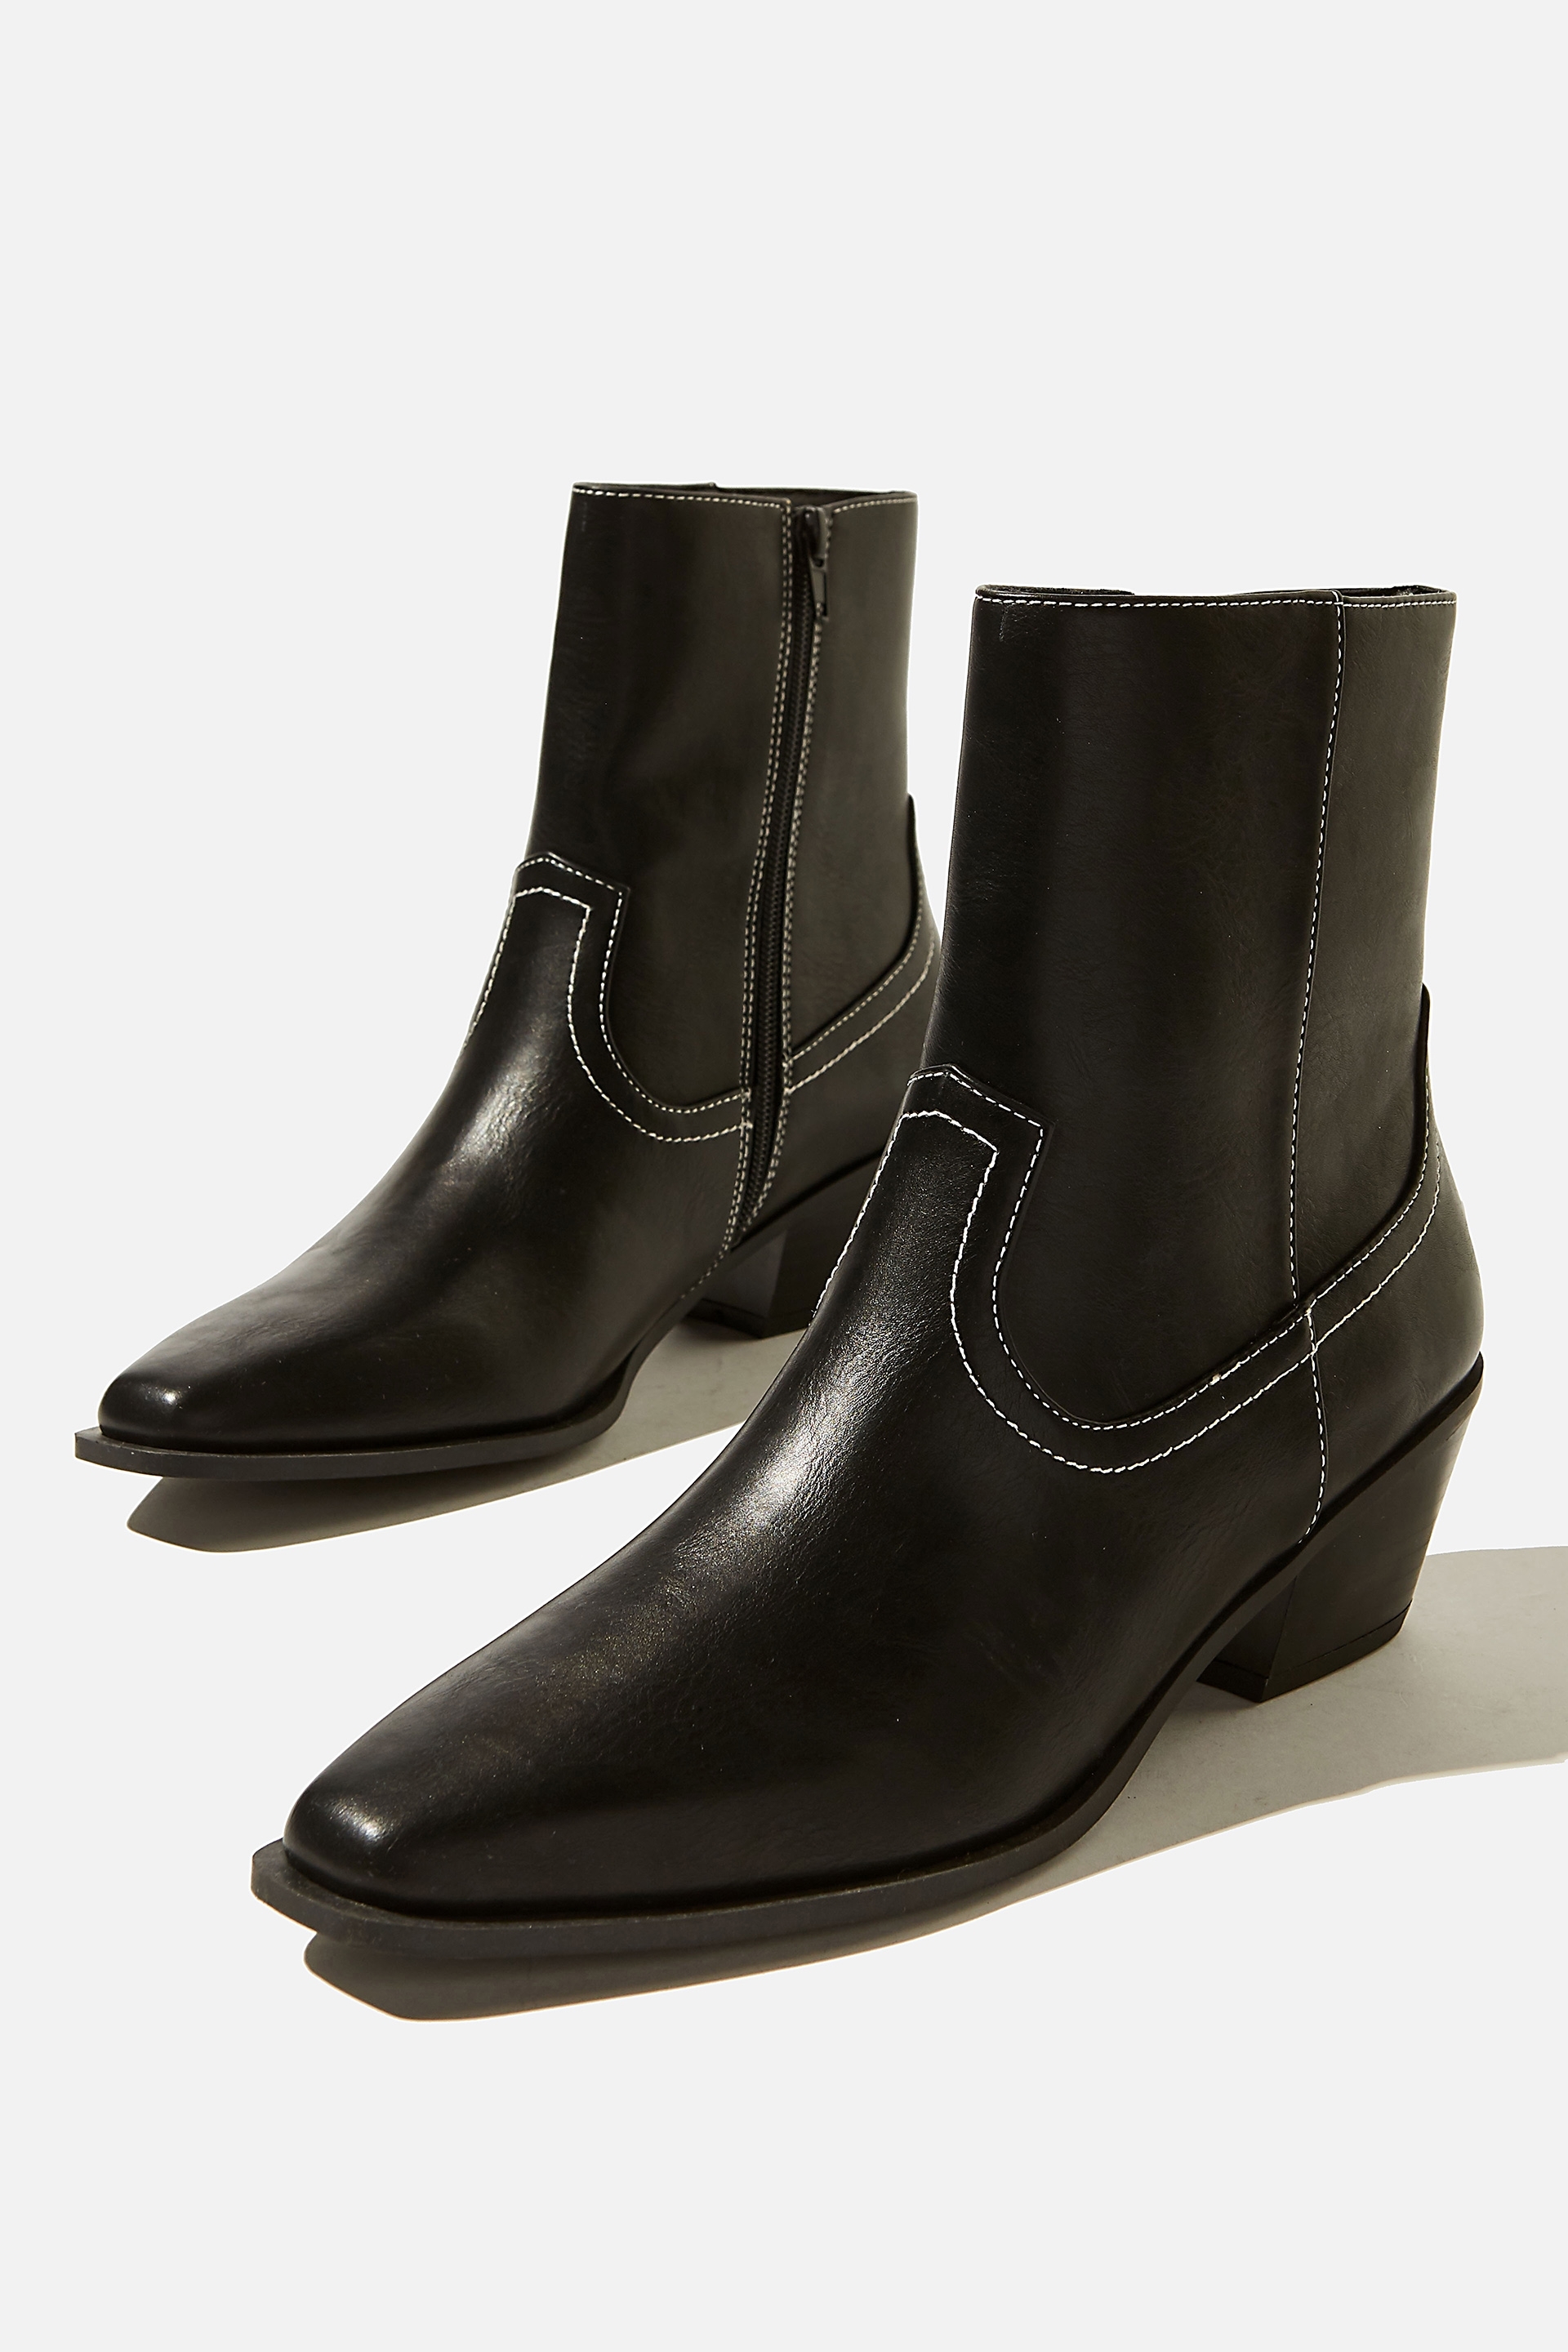 Rubi - Marlie Minimal Western Boot - Black smooth